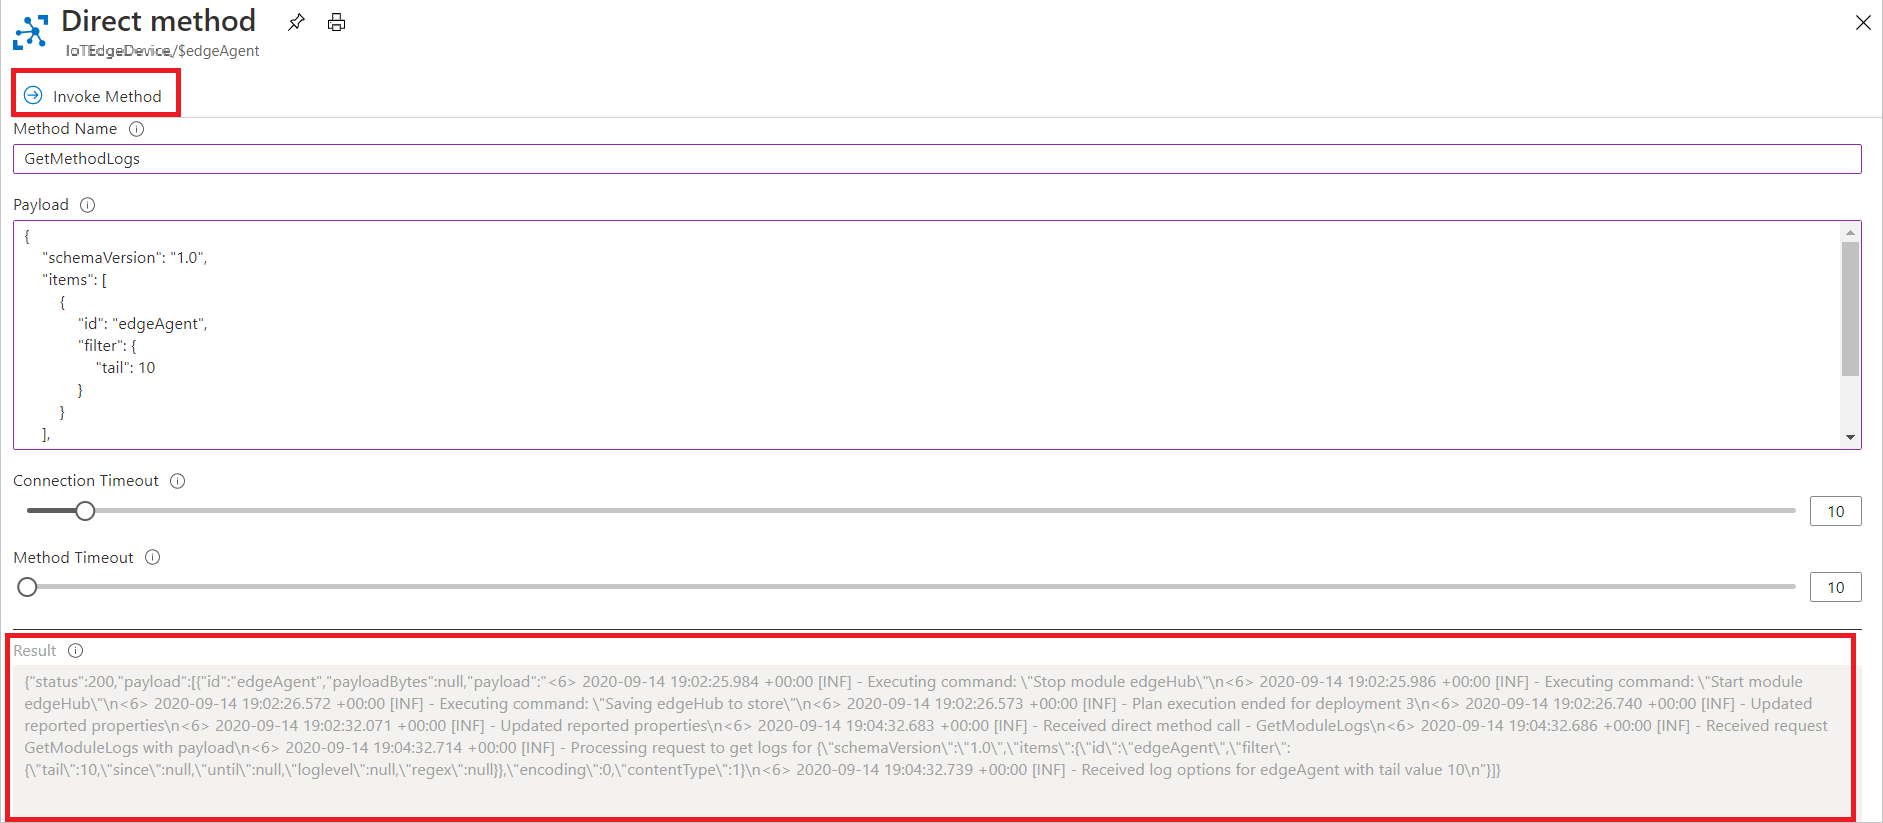 Captura de pantalla de cómo invocar el método directo GetModuleLogs en Azure Portal.